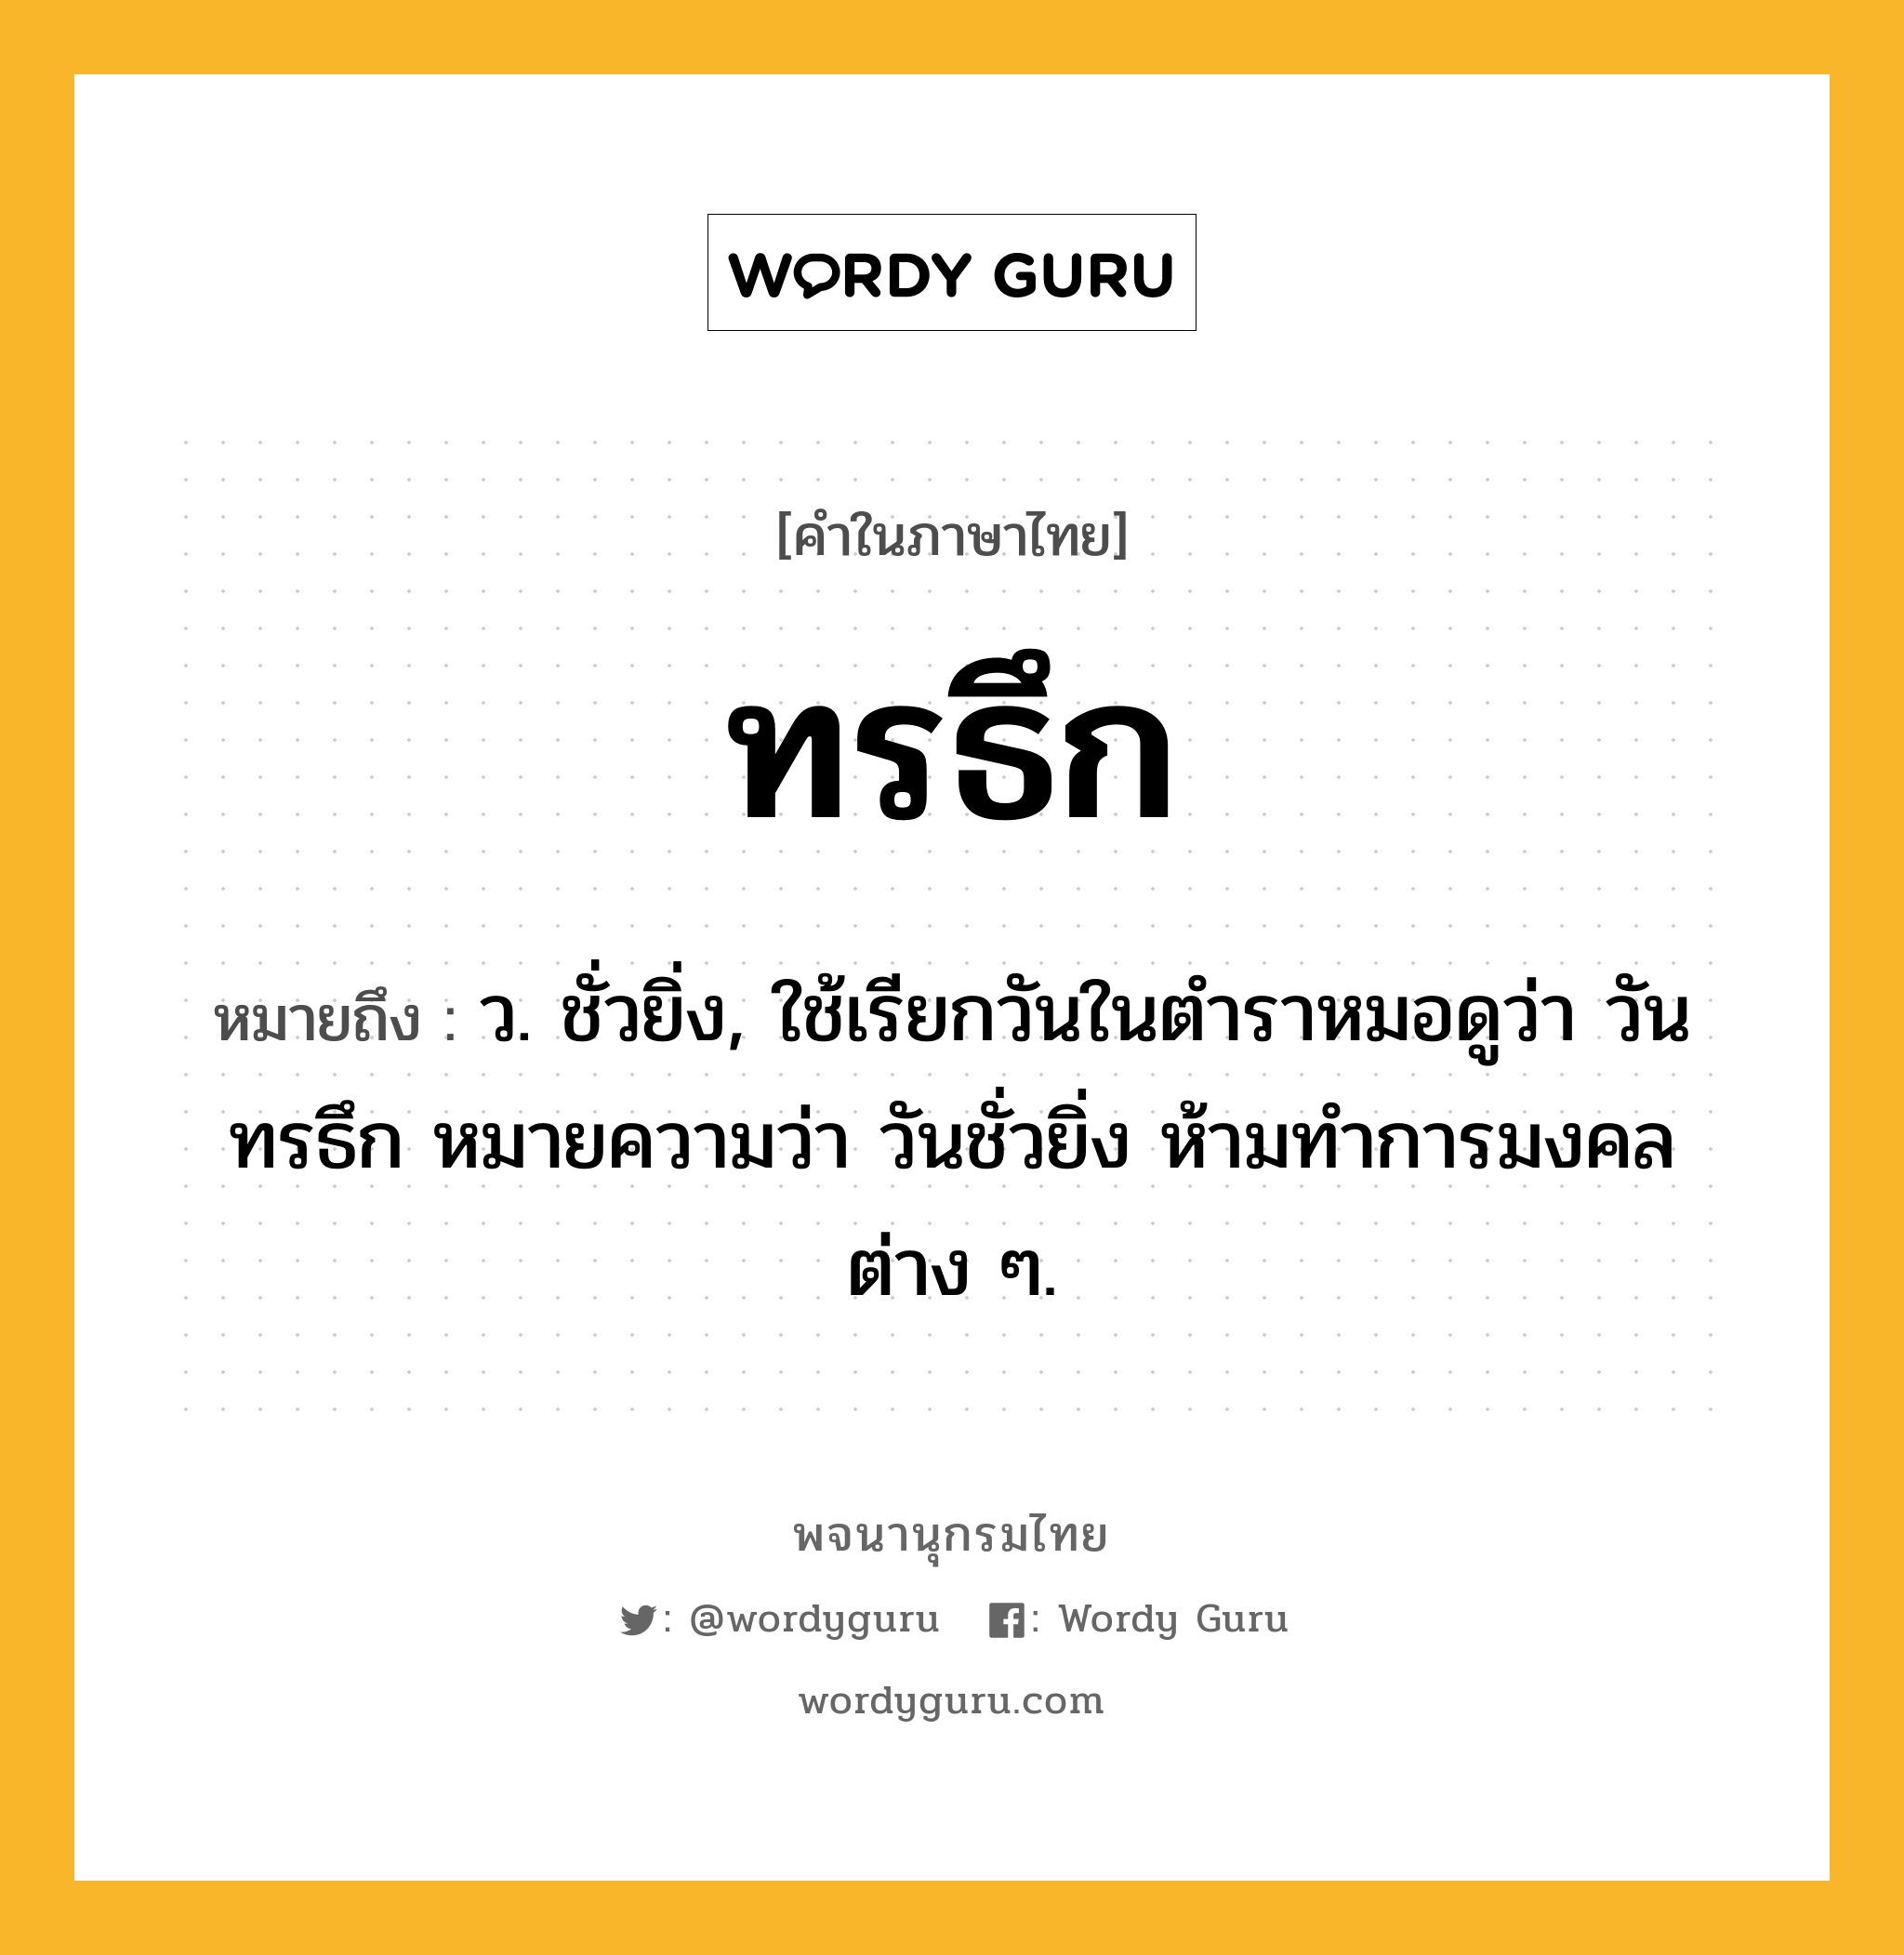 ทรธึก ความหมาย หมายถึงอะไร?, คำในภาษาไทย ทรธึก หมายถึง ว. ชั่วยิ่ง, ใช้เรียกวันในตําราหมอดูว่า วันทรธึก หมายความว่า วันชั่วยิ่ง ห้ามทําการมงคลต่าง ๆ.